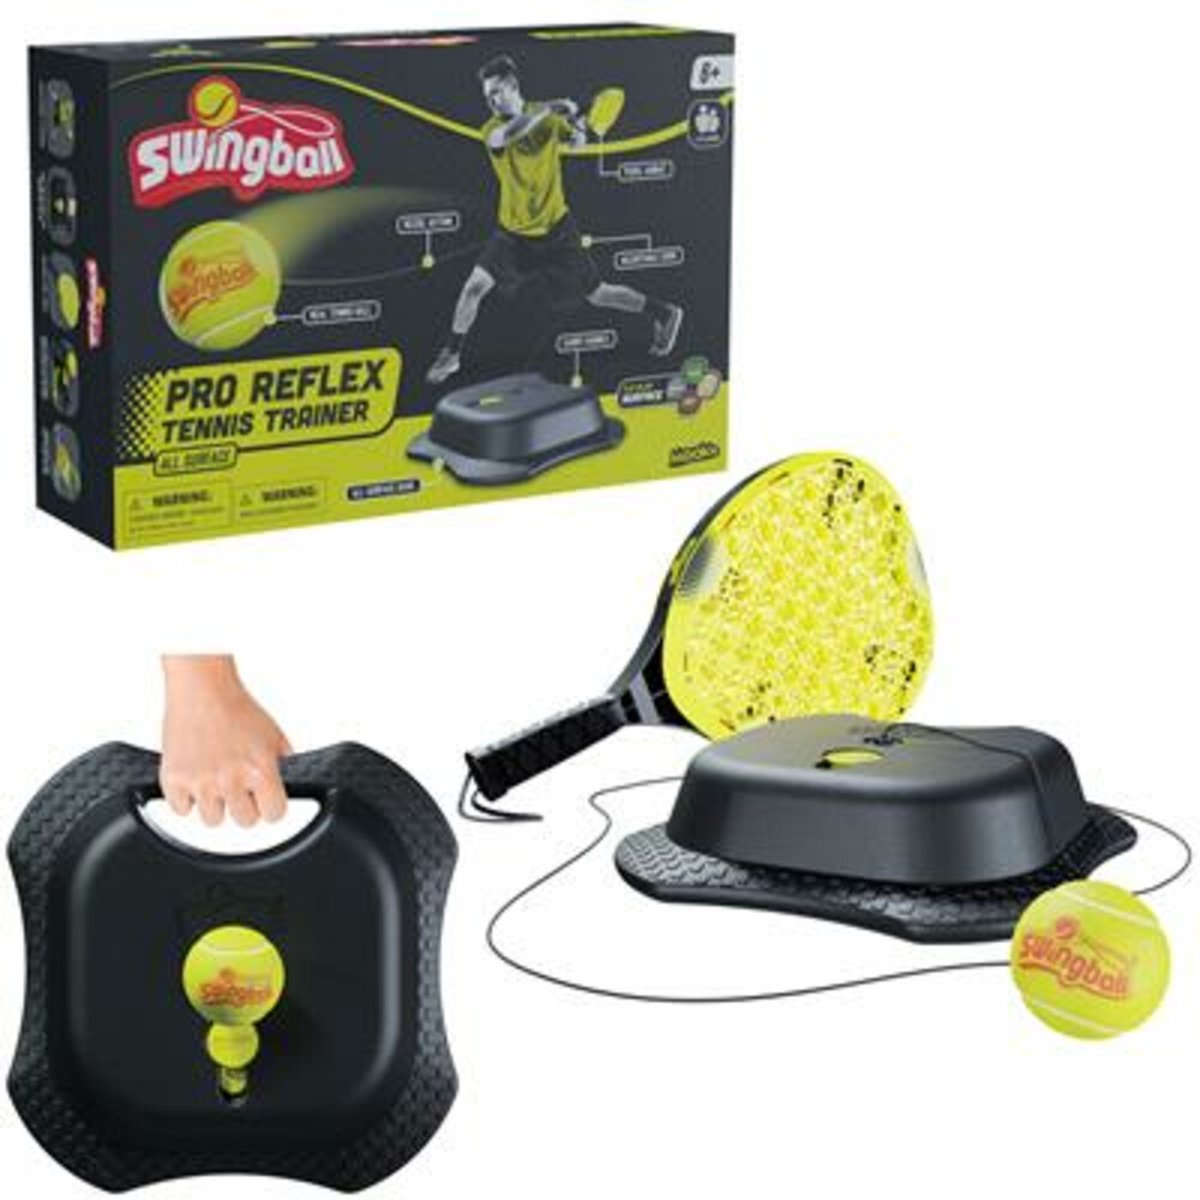 Entraîneur de Tennis Mookie Pro Reflex toutes surfaces | bol.com